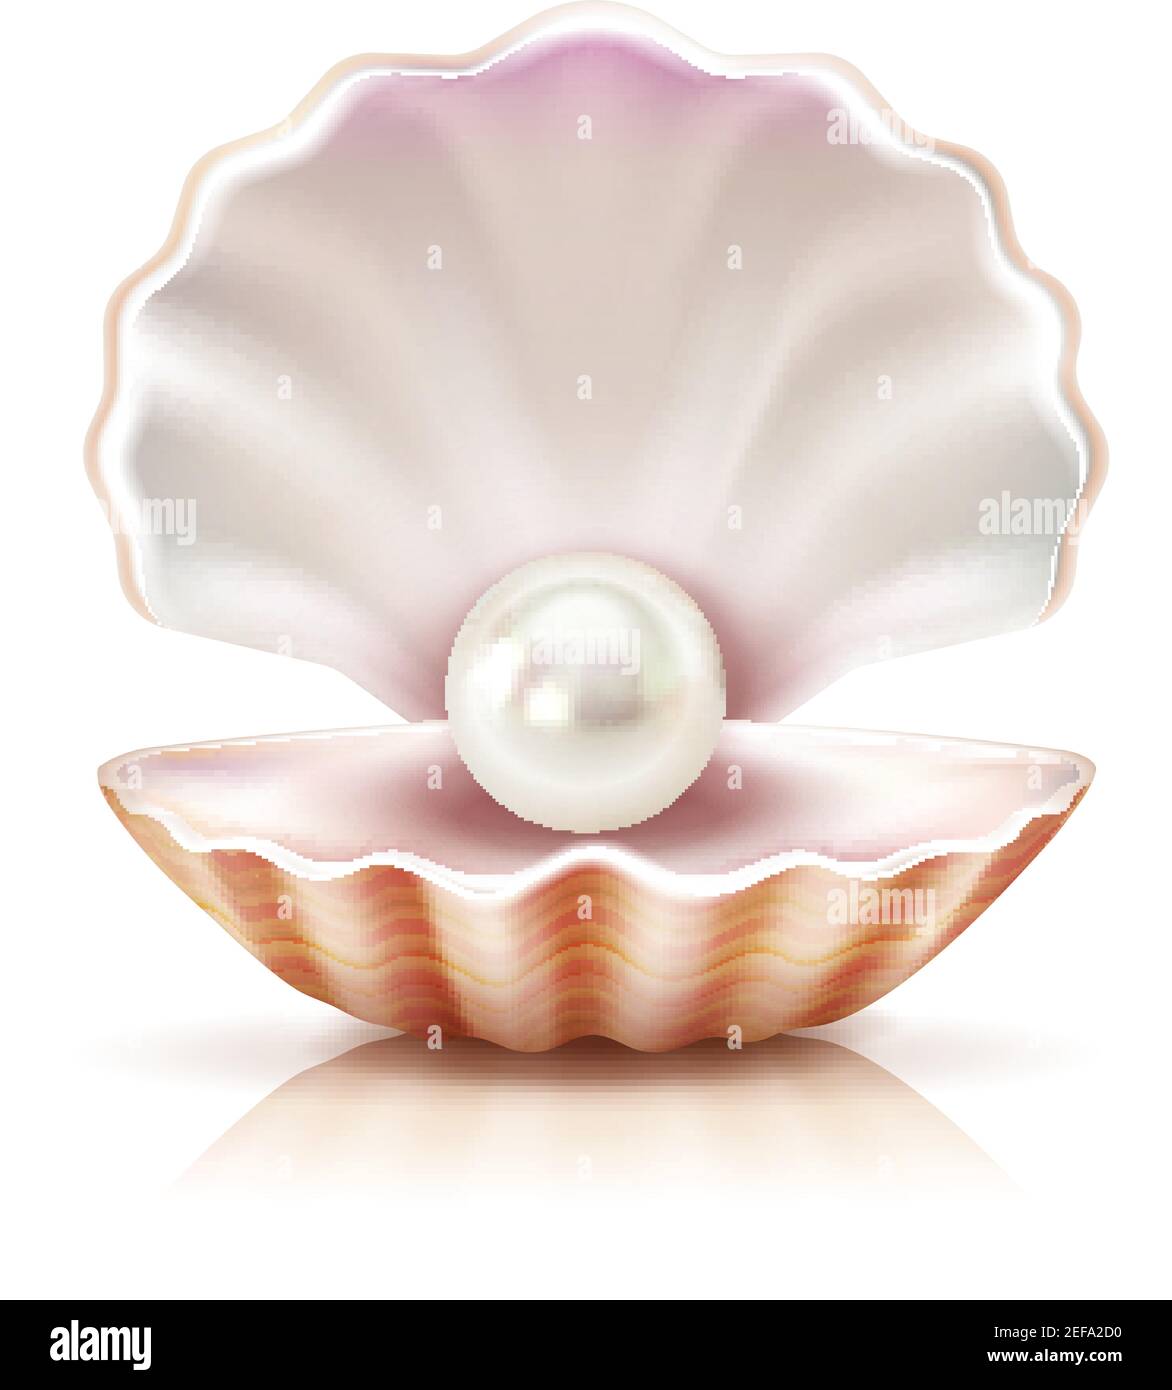 Madre di perla che splende in guscio aperto di acqua dolce o. seashell mollusco closeup immagine realistica illustrazione vettoriale Illustrazione Vettoriale